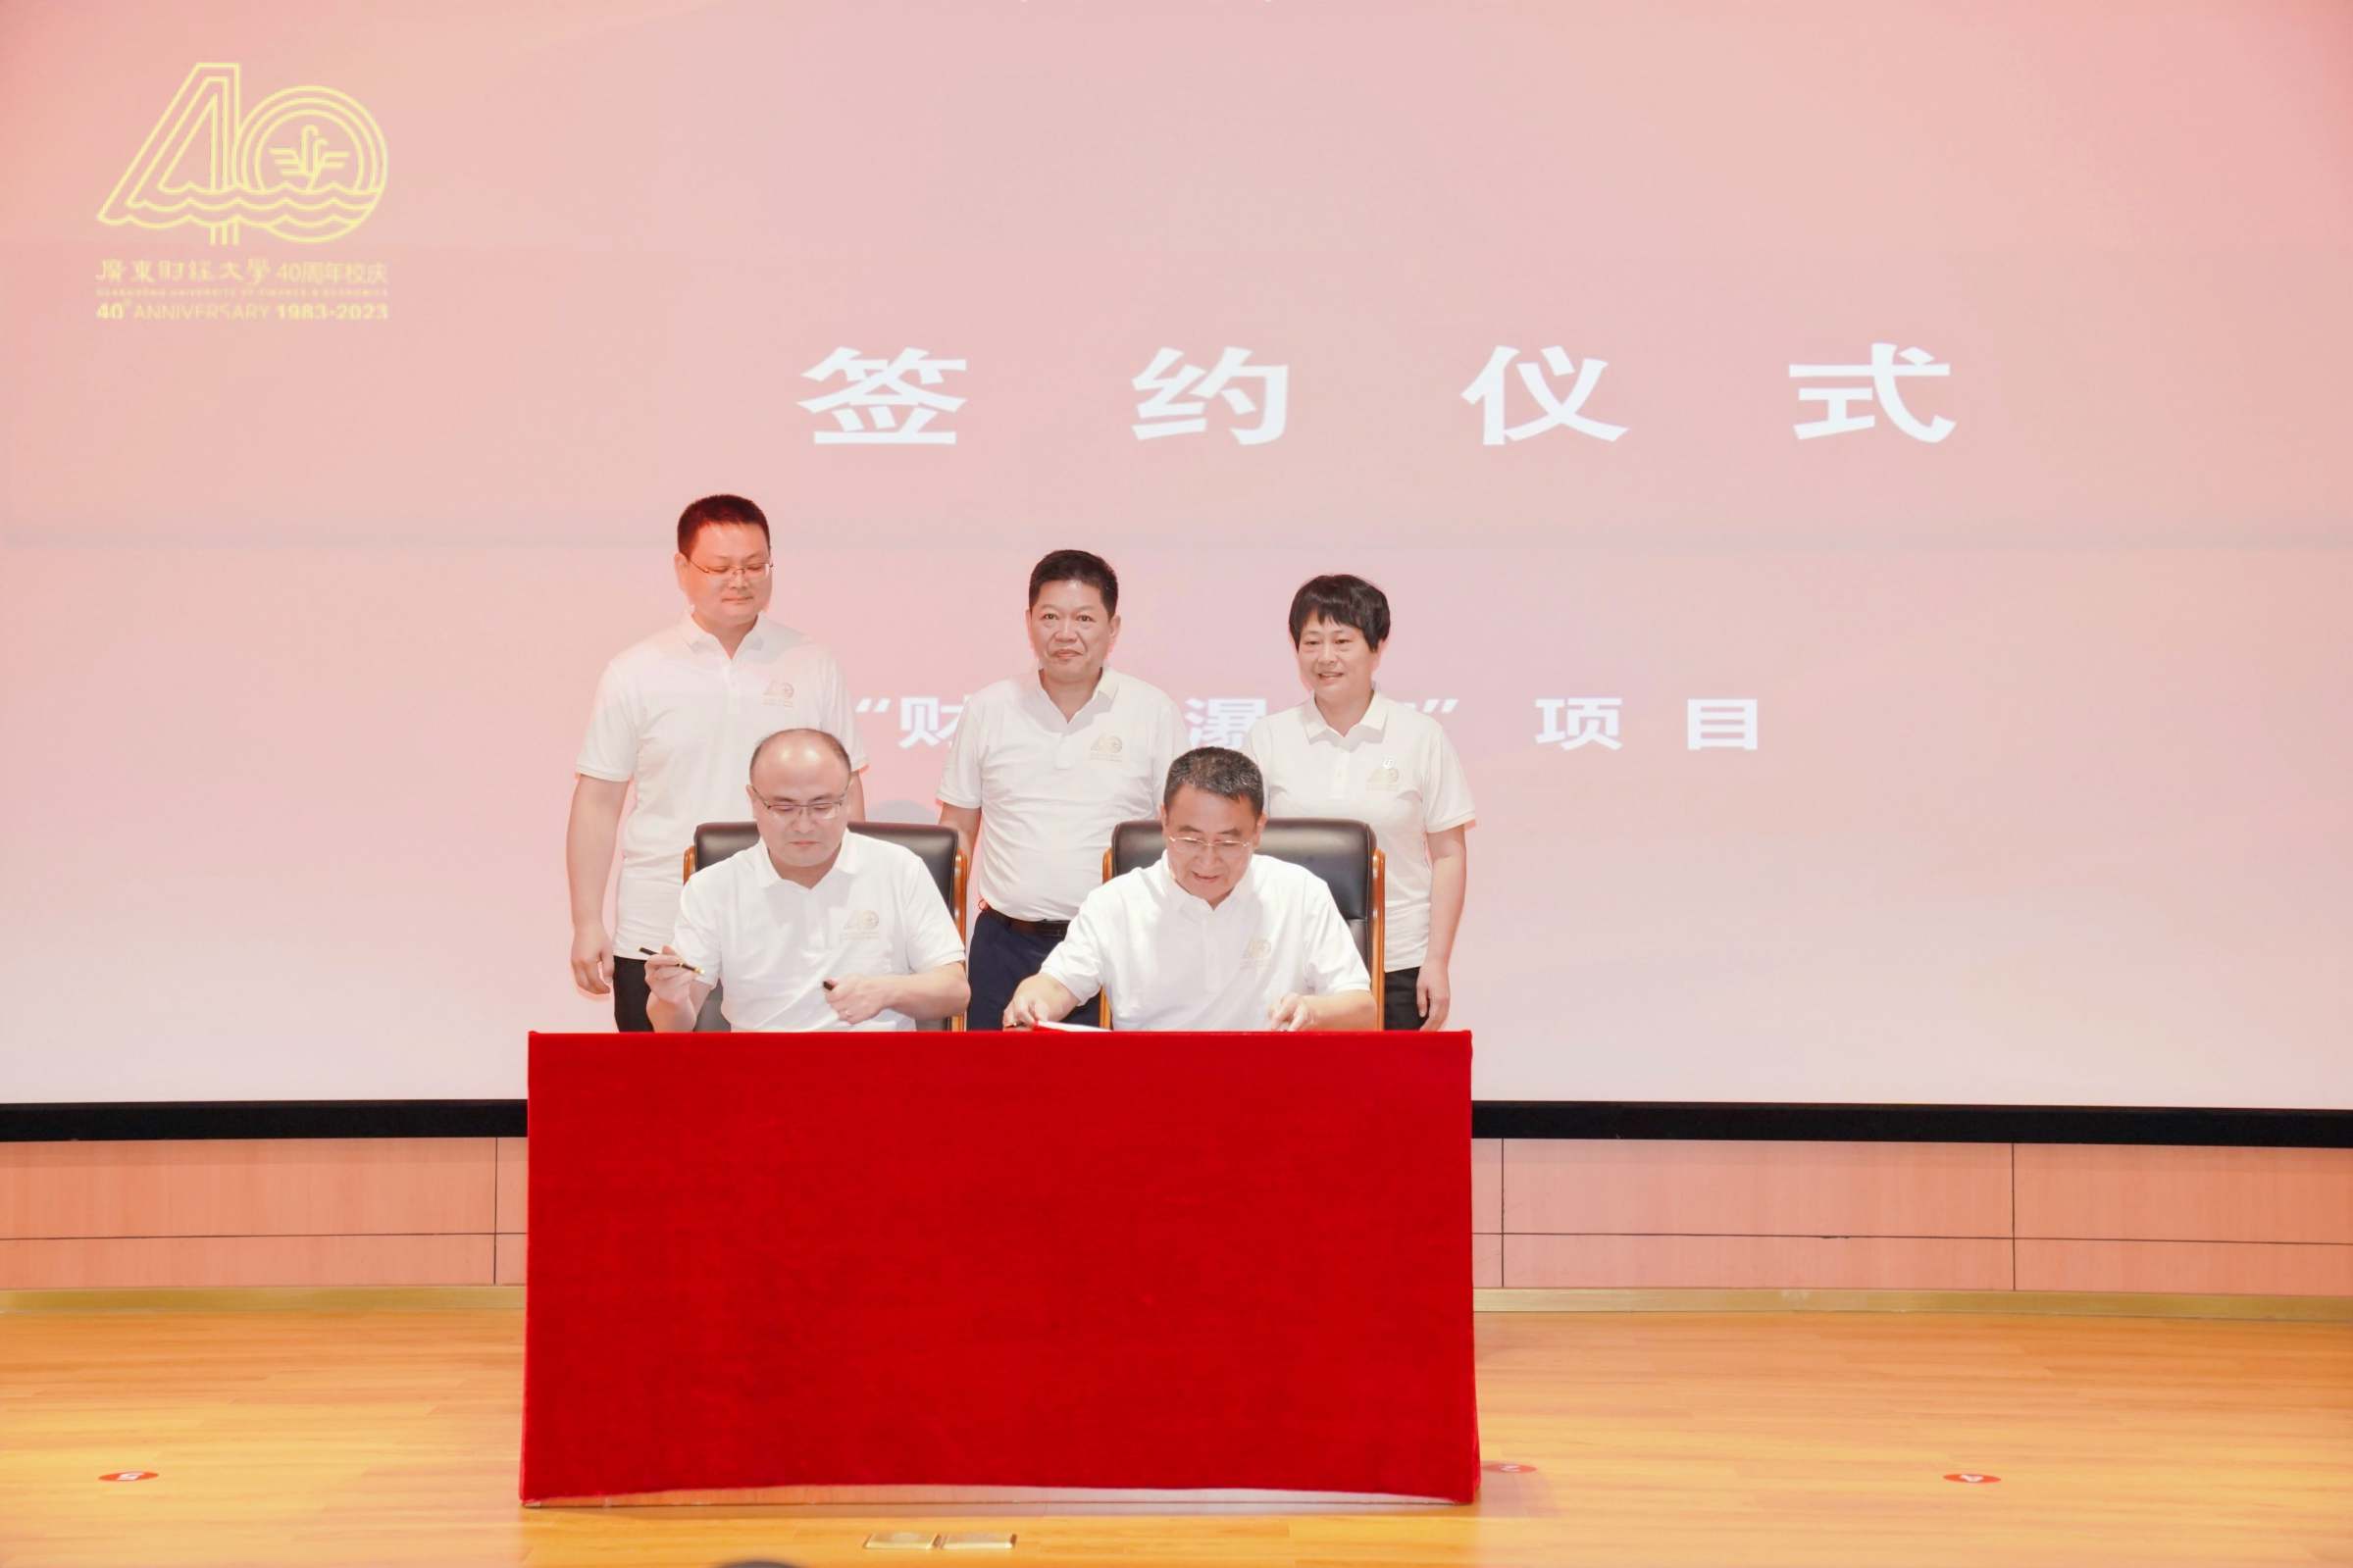 校党委副书记刘祖华、彭翠峰、雷宇等见证赖化冰校友与陈光团理事长签约。